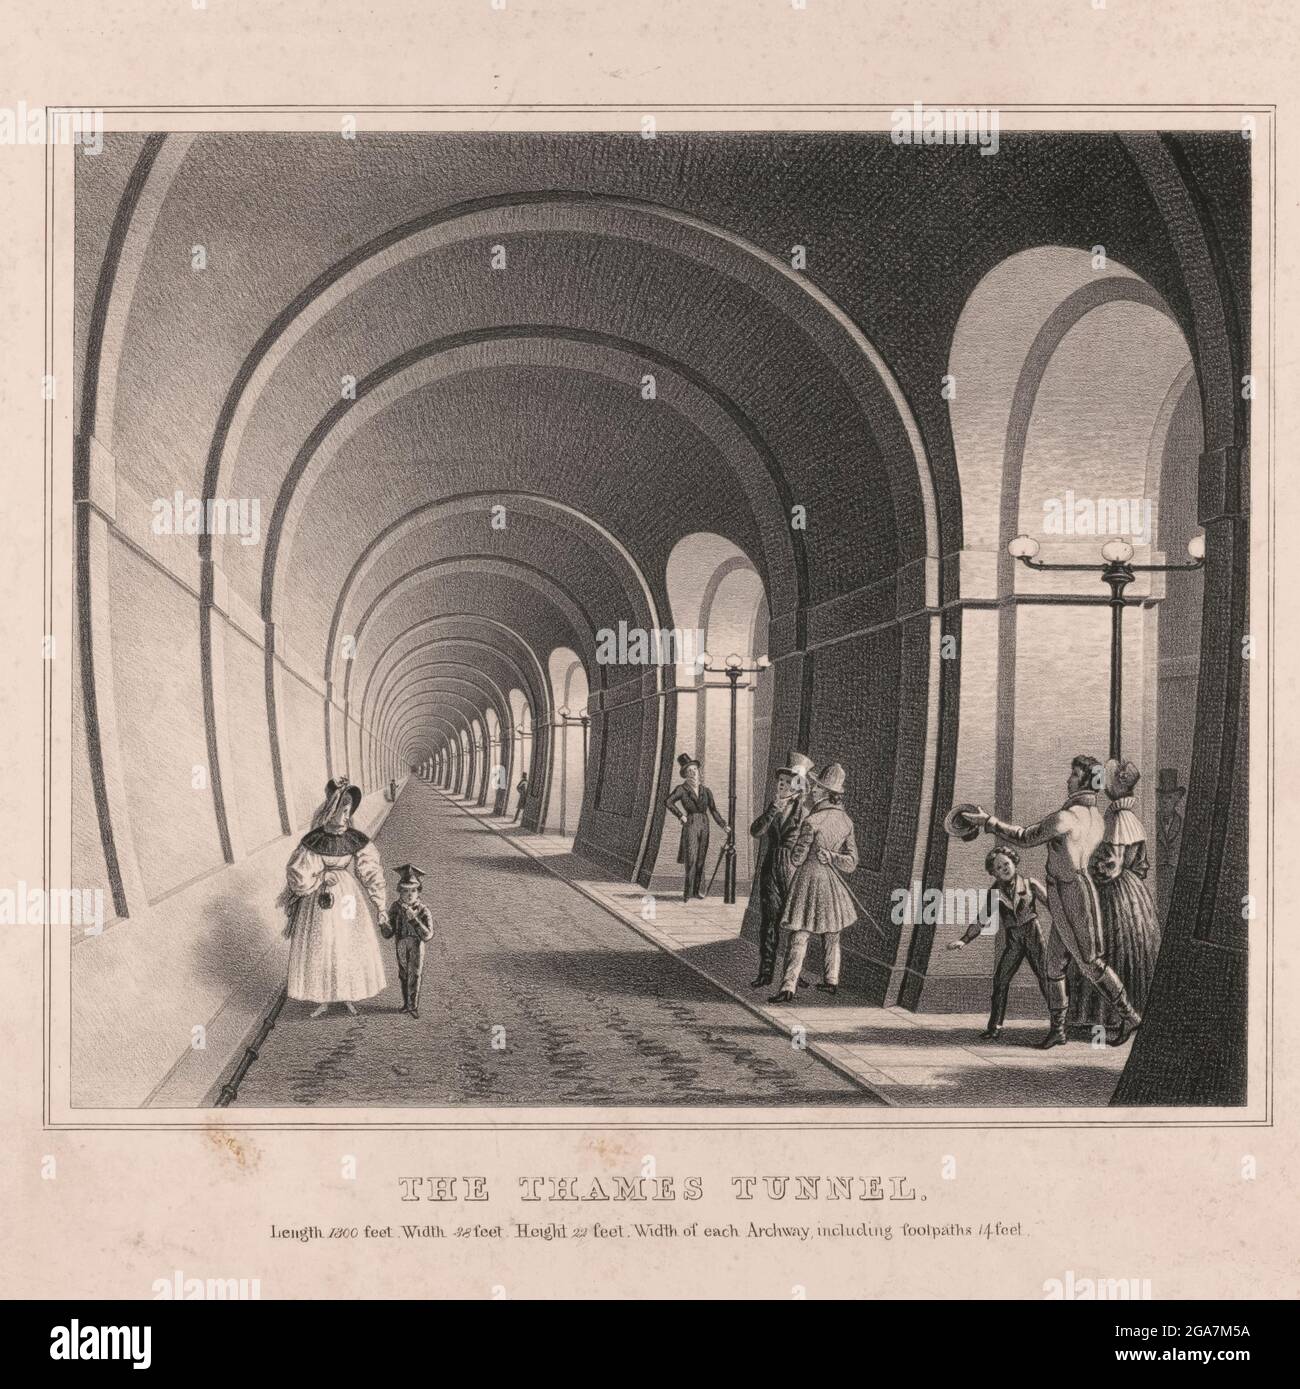 Il Thames Tunnel è un tunnel sotto il Tamigi di Londra, che collega Rotherhithe e Wapping. Misura 35 piedi (11 m) di larghezza per 20 piedi (6 m) di altezza ed è 1,300 piedi (396 m) di lunghezza, che corre ad una profondità di 75 piedi (23 m) sotto la superficie del fiume misurata con l'alta marea. È il primo tunnel conosciuto per essere stato costruito con successo sotto un fiume navigabile ed è stato costruito tra il 1825 e il 1843 da Marc Brunel e suo figlio Isambard utilizzando lo scudo tunneling recentemente inventato dal maggiore Brunel e Thomas Cochrane. Il tunnel era originariamente progettato per carrozze trainate da cavalli, ma era principalmente Foto Stock